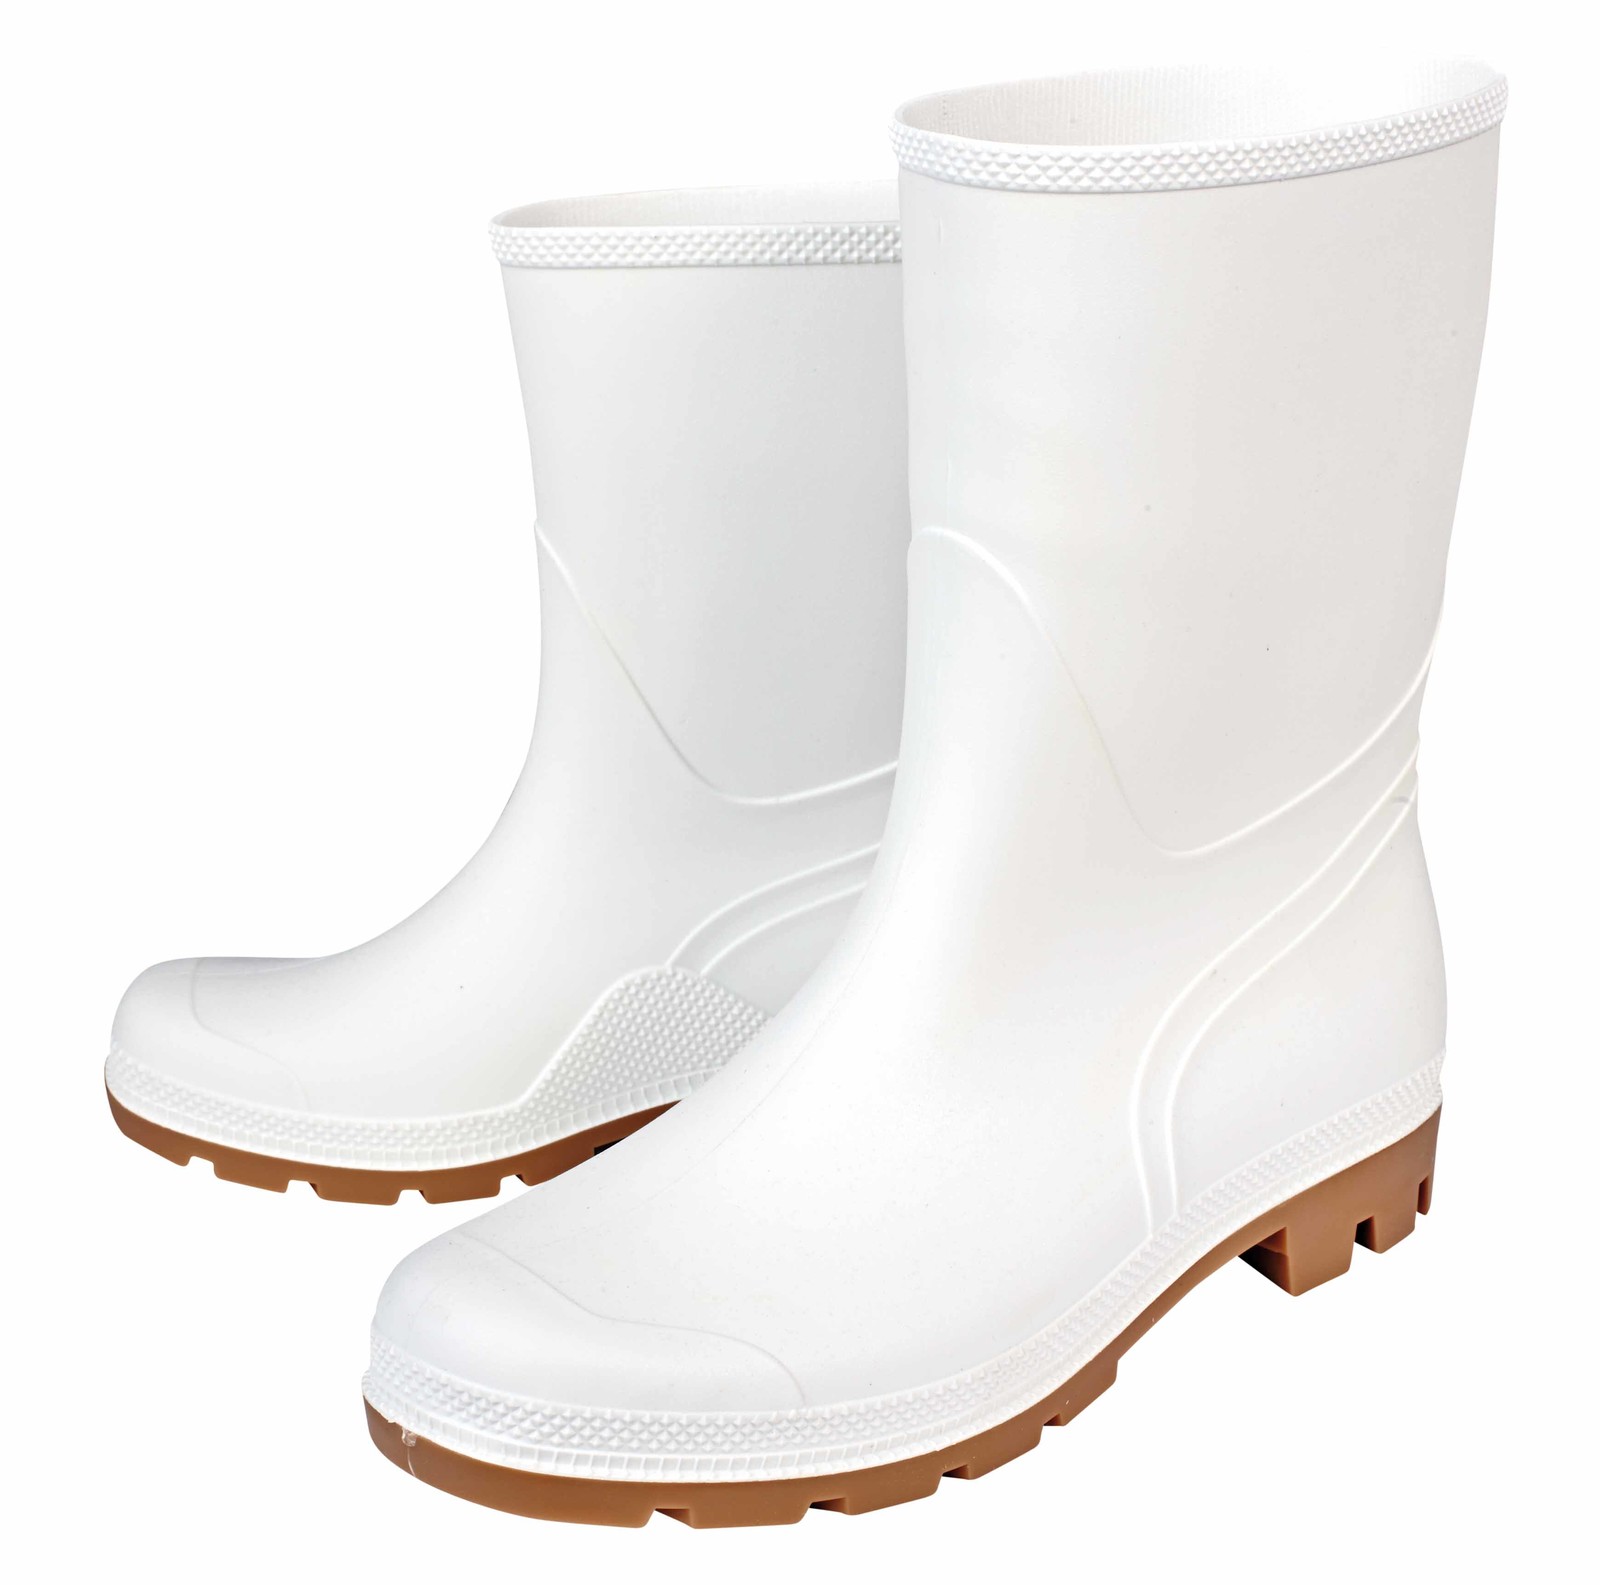 Gumáky Boots Troncheto PVC nízke - veľkosť: 45, farba: biela